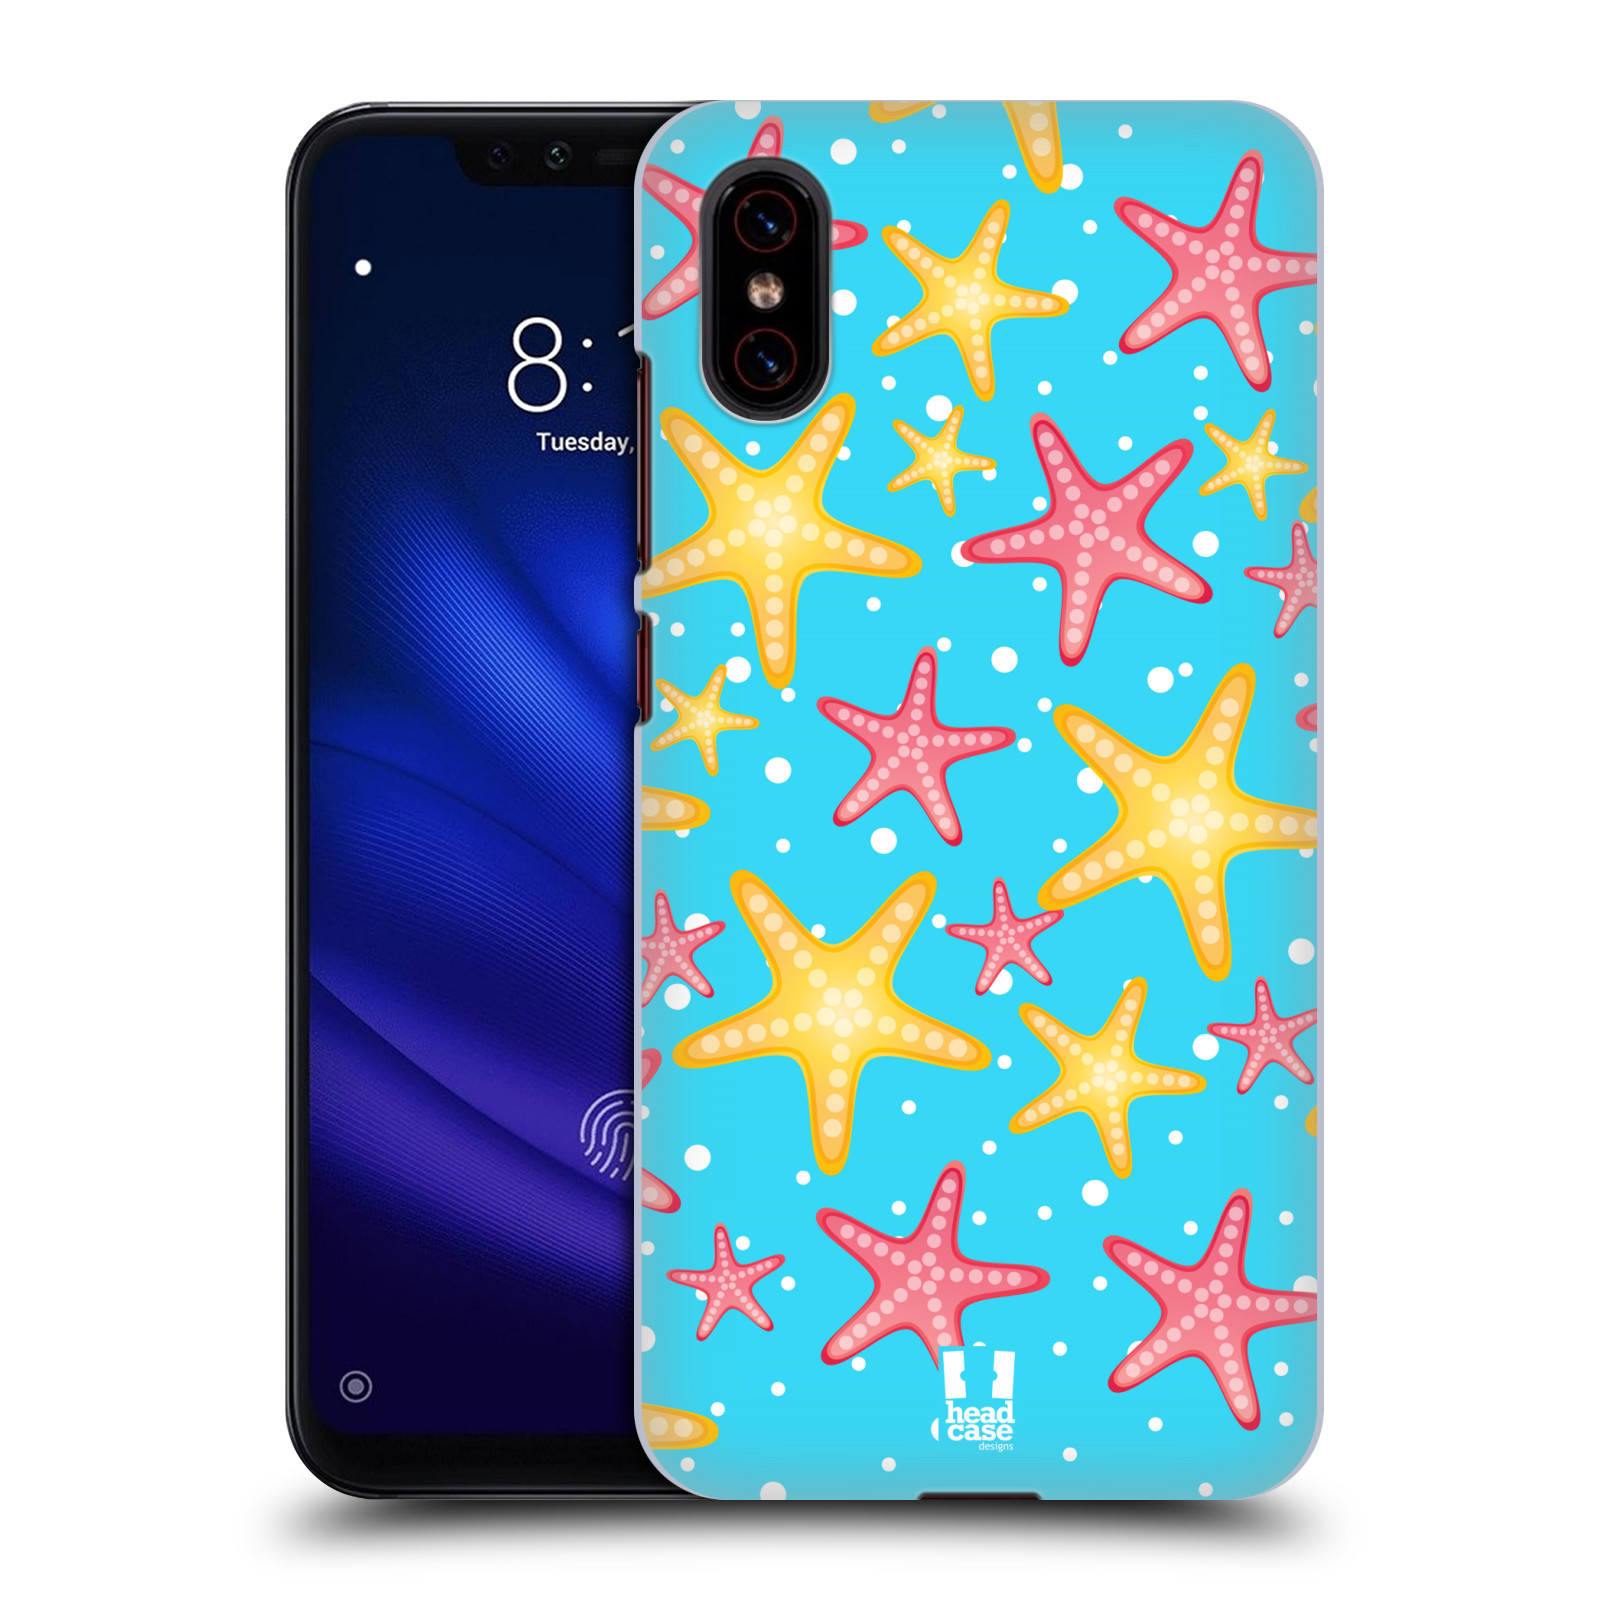 Zadní obal pro mobil Xiaomi Mi 8 PRO - HEAD CASE - kreslený mořský vzor hvězda